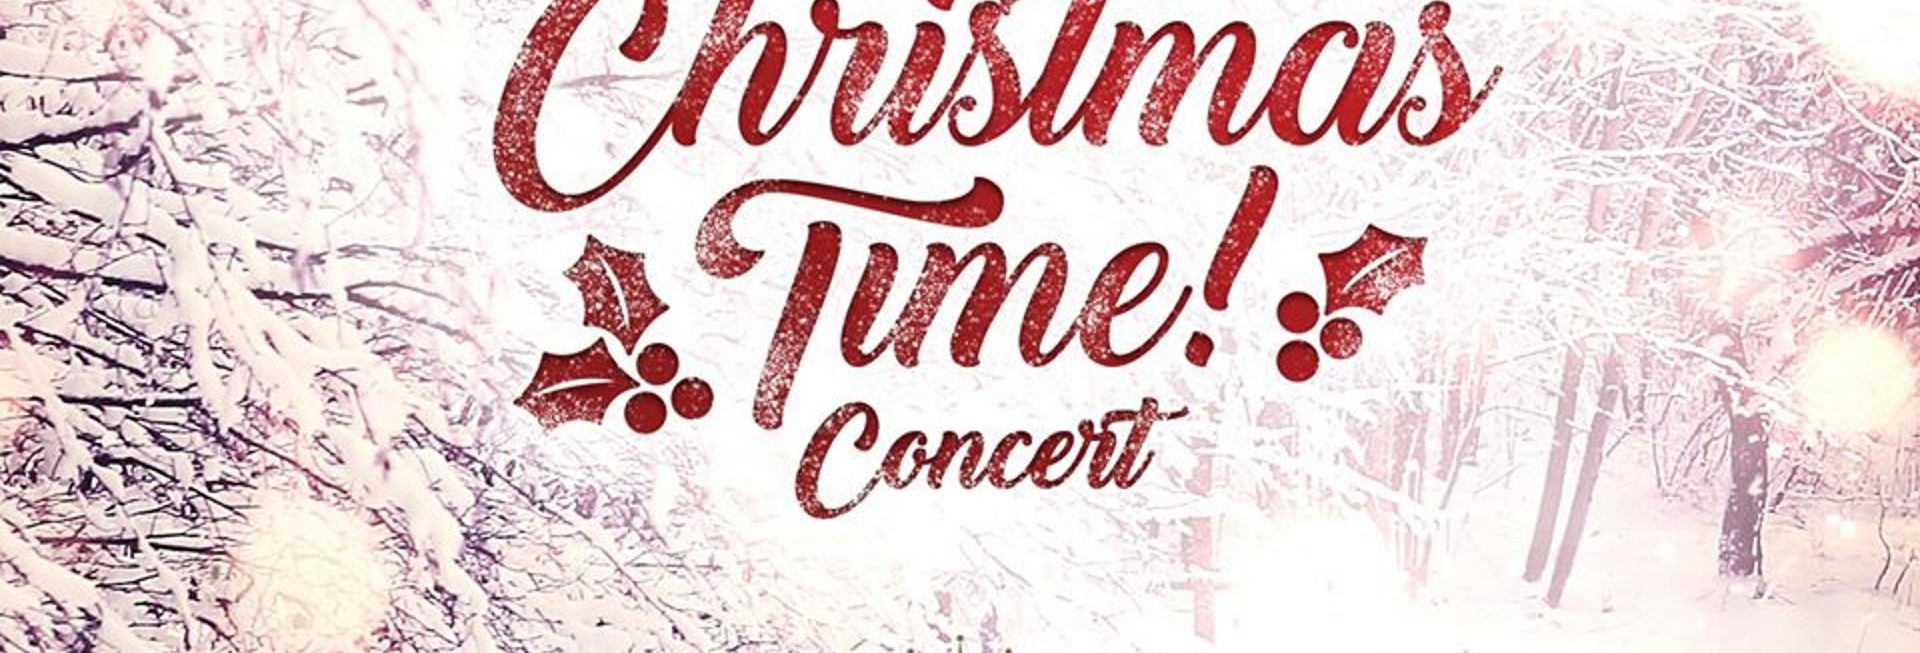 Plakat graficzny zapraszający na Koncert Christmas Time! - Concert Elbląg 2020. Plakat posiada tło oszronionego i zaśnieżonego lasu z napisem koloru czerwonego Christmas Time! - Concert.   